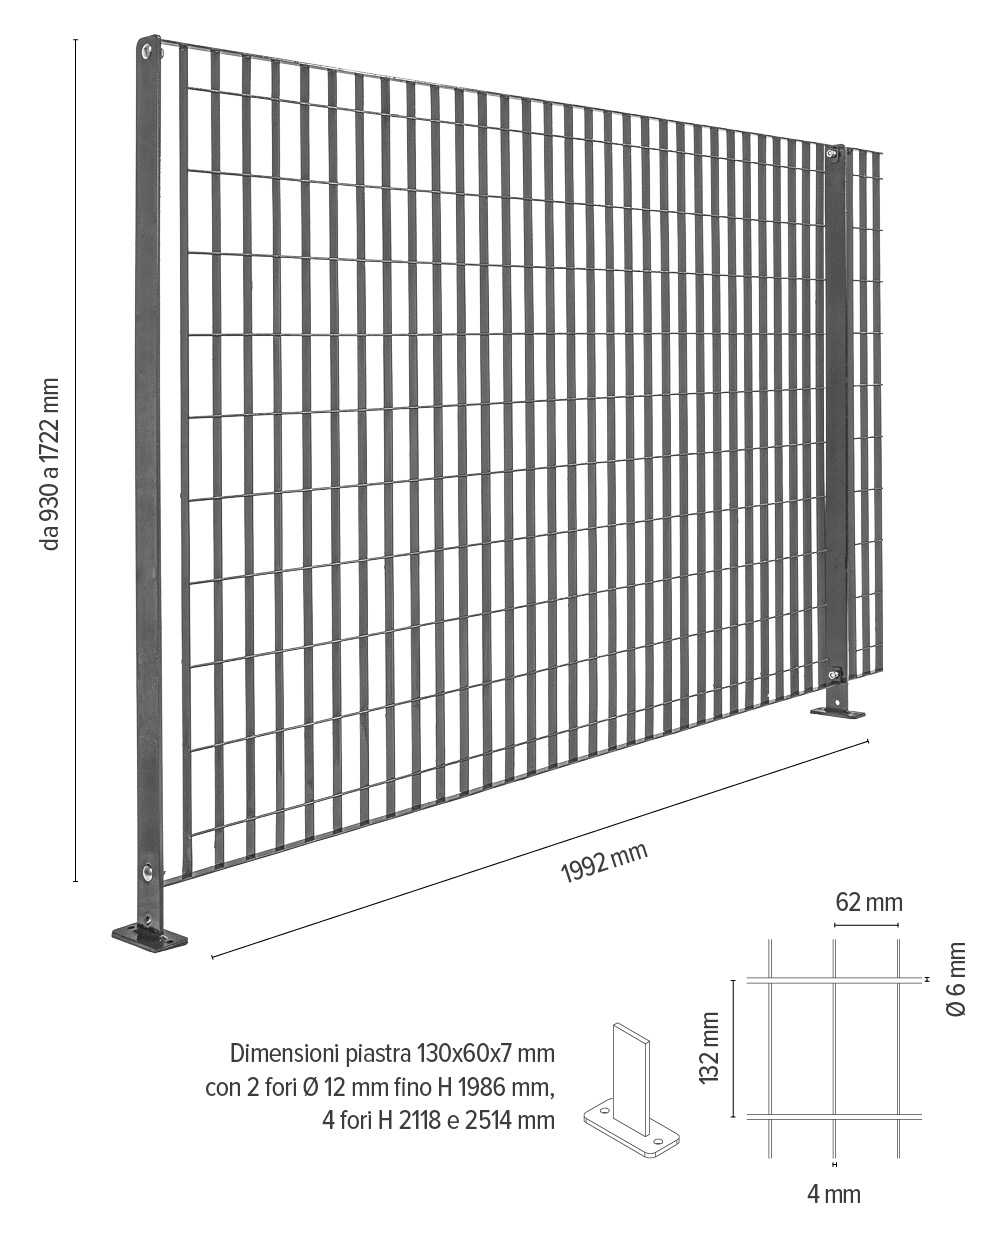 Britosterope - info tecniche recinzioni ad alta sicurezza